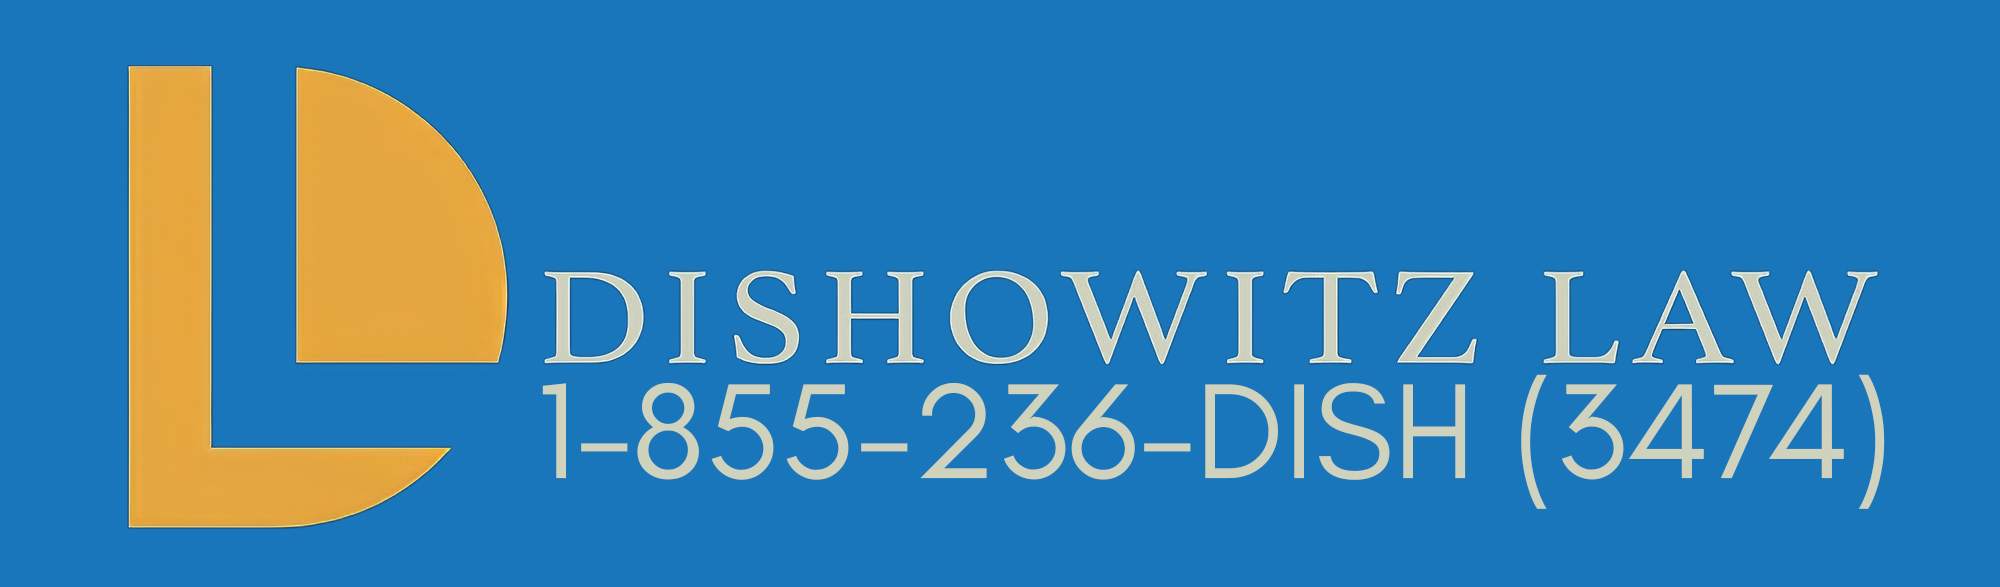 Dishowitz Law New Logo